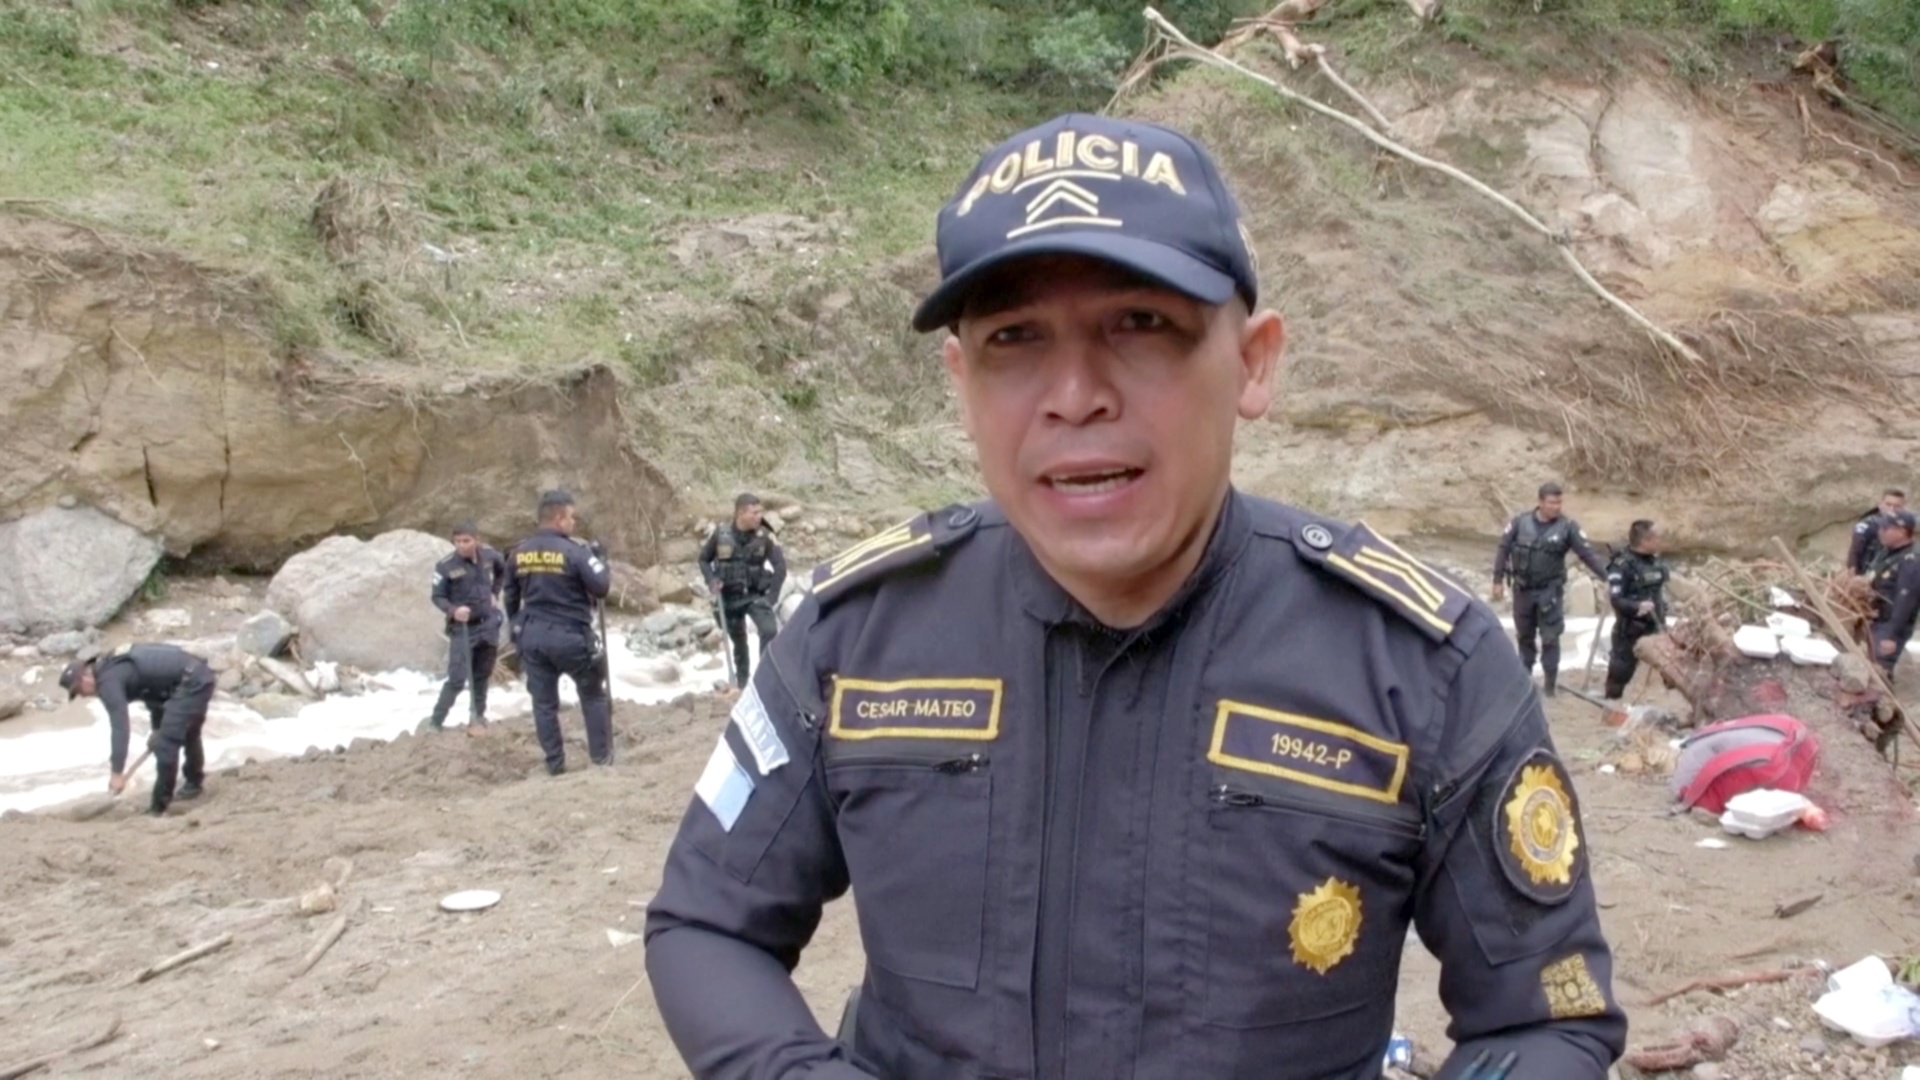 Несколько человек погибли в городе Гватемала в результате разлива реки